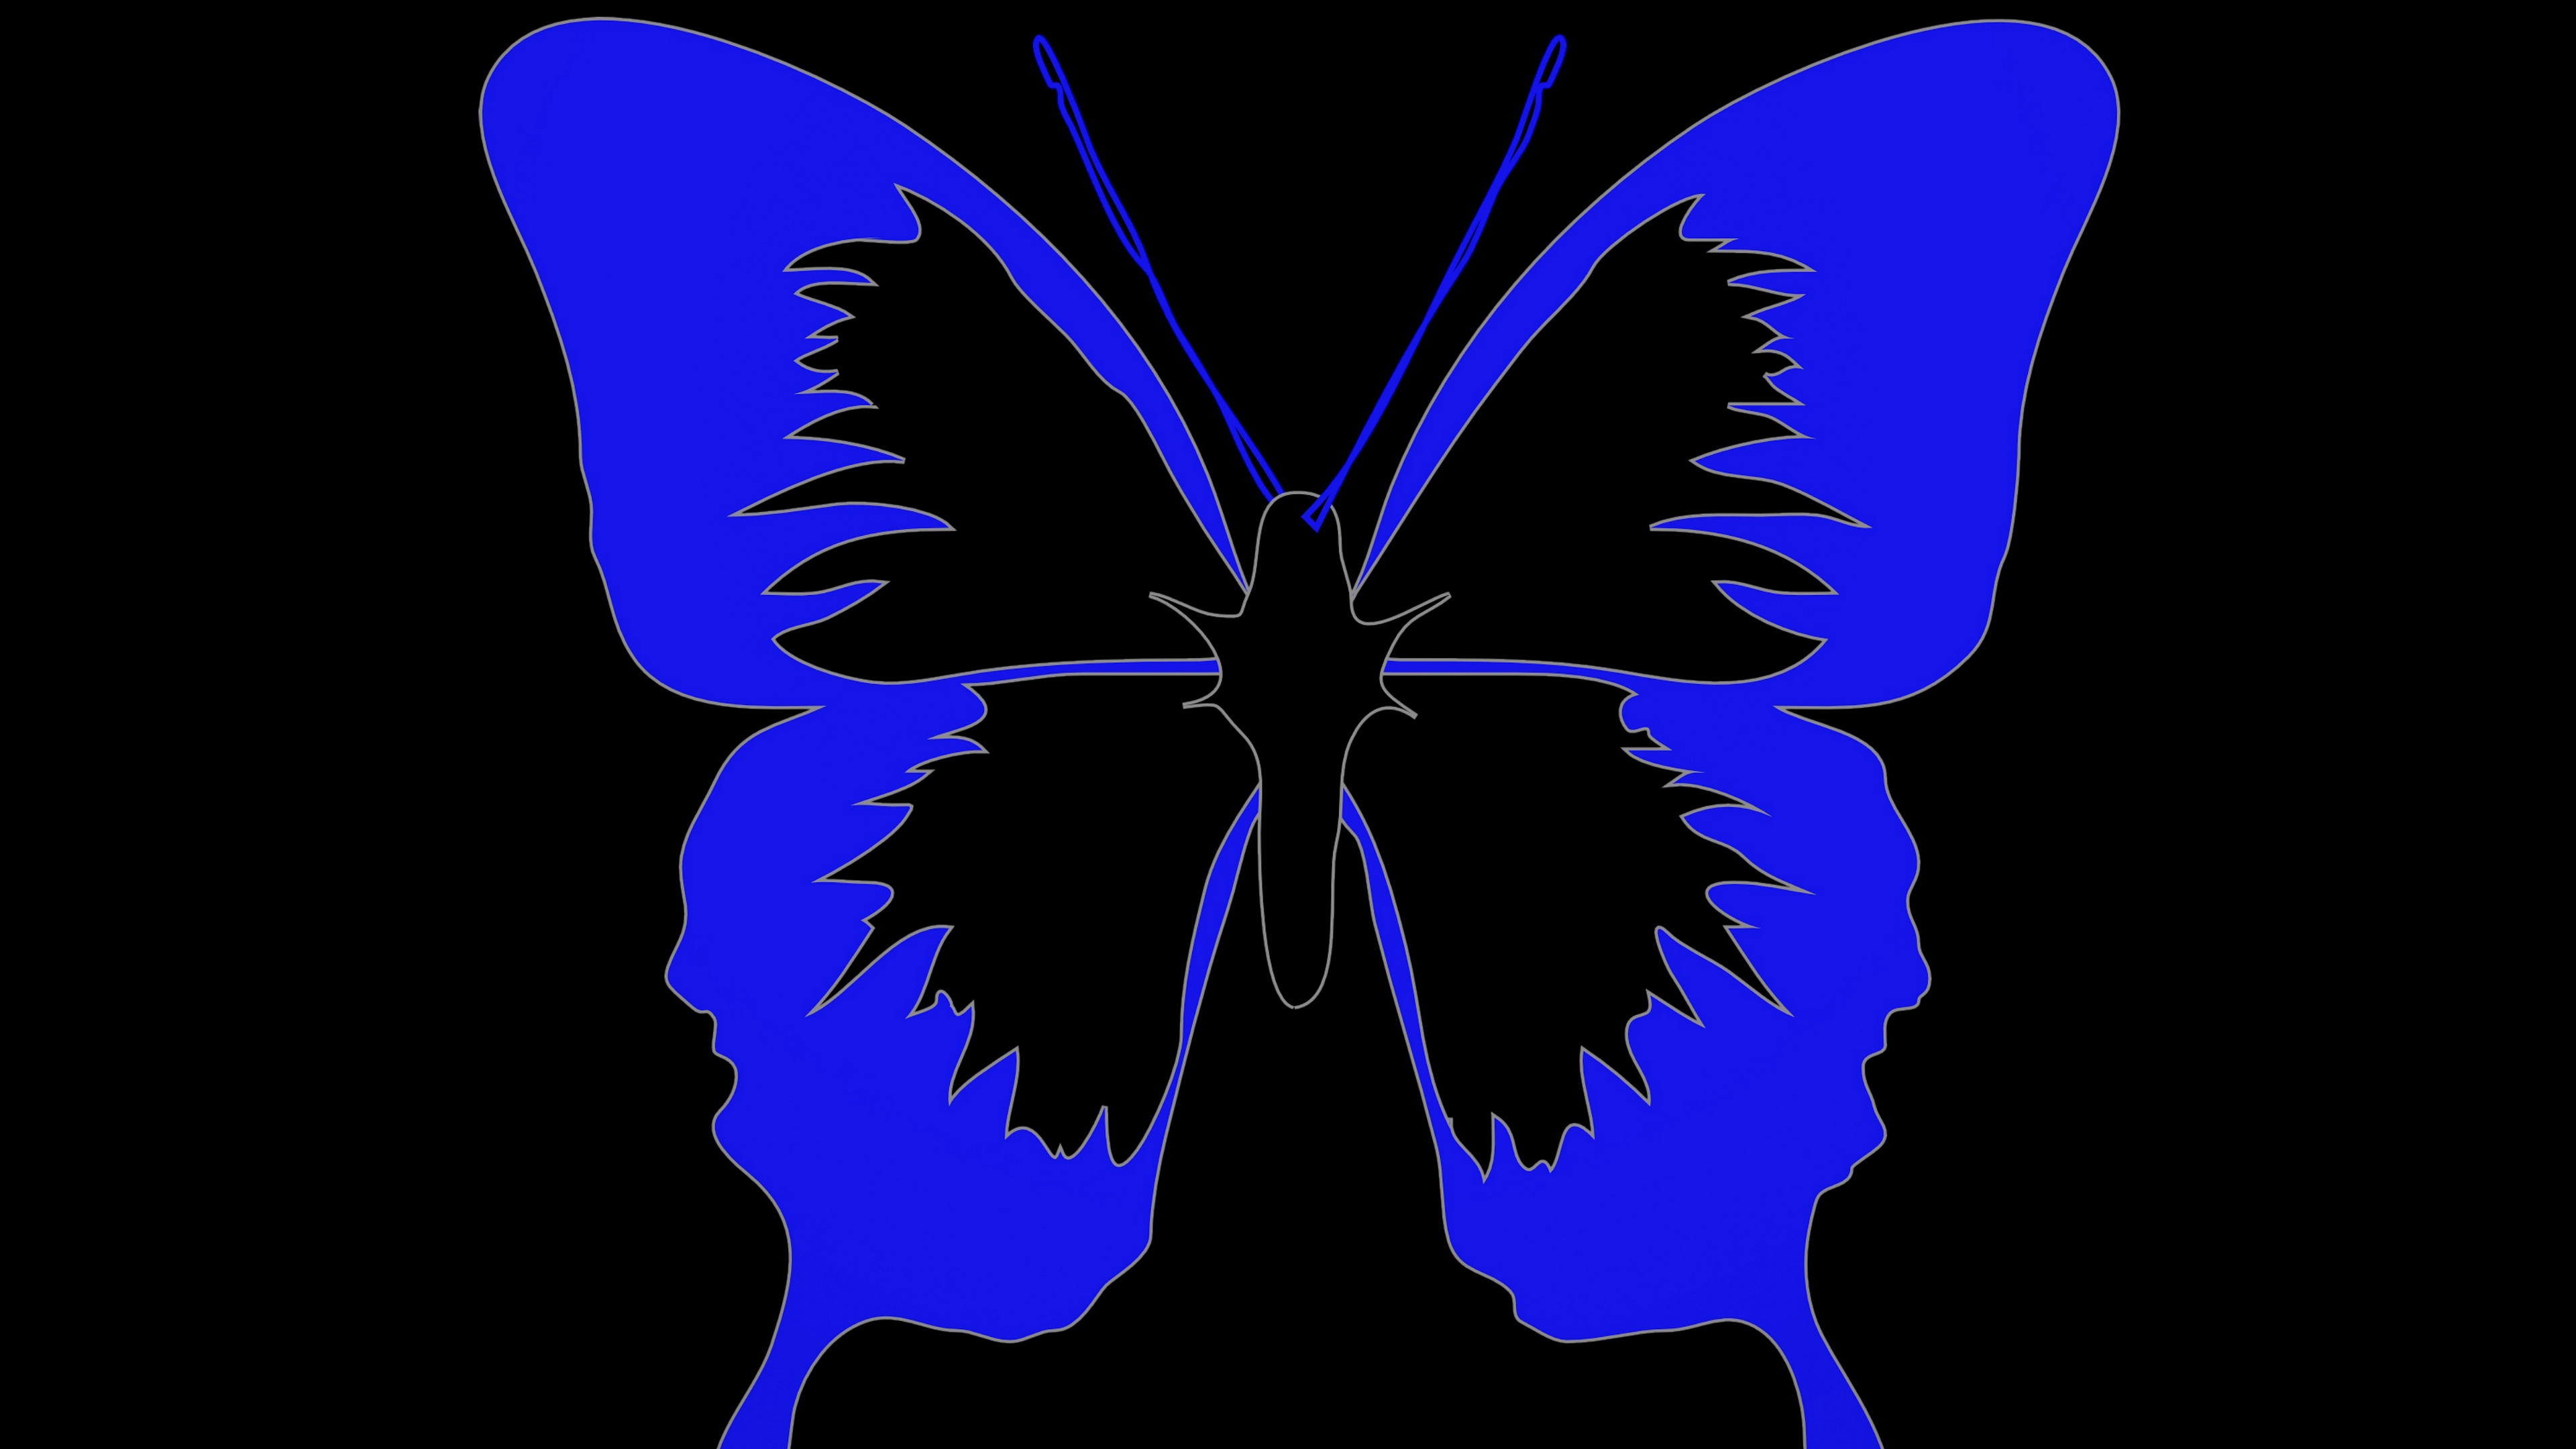 butterfly minimalism black blue 4k 1540574295 - butterfly, minimalism, black, blue 4k - minimalism, Butterfly, Black